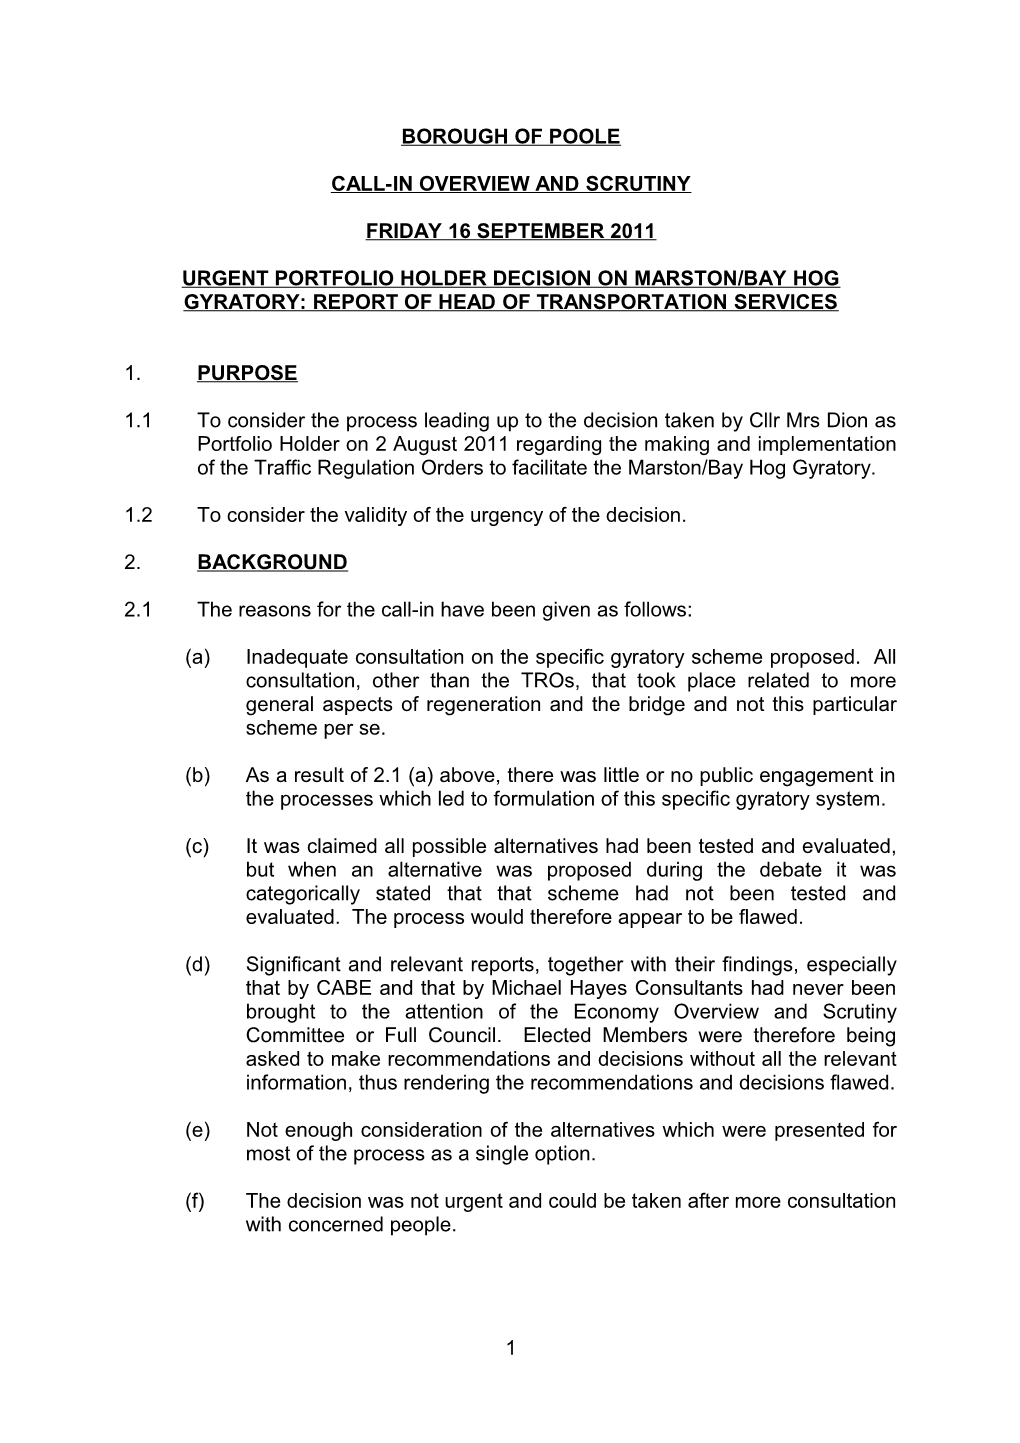 Urgent Portfolio Holder Decision on Marston Bay Hog Gyratory